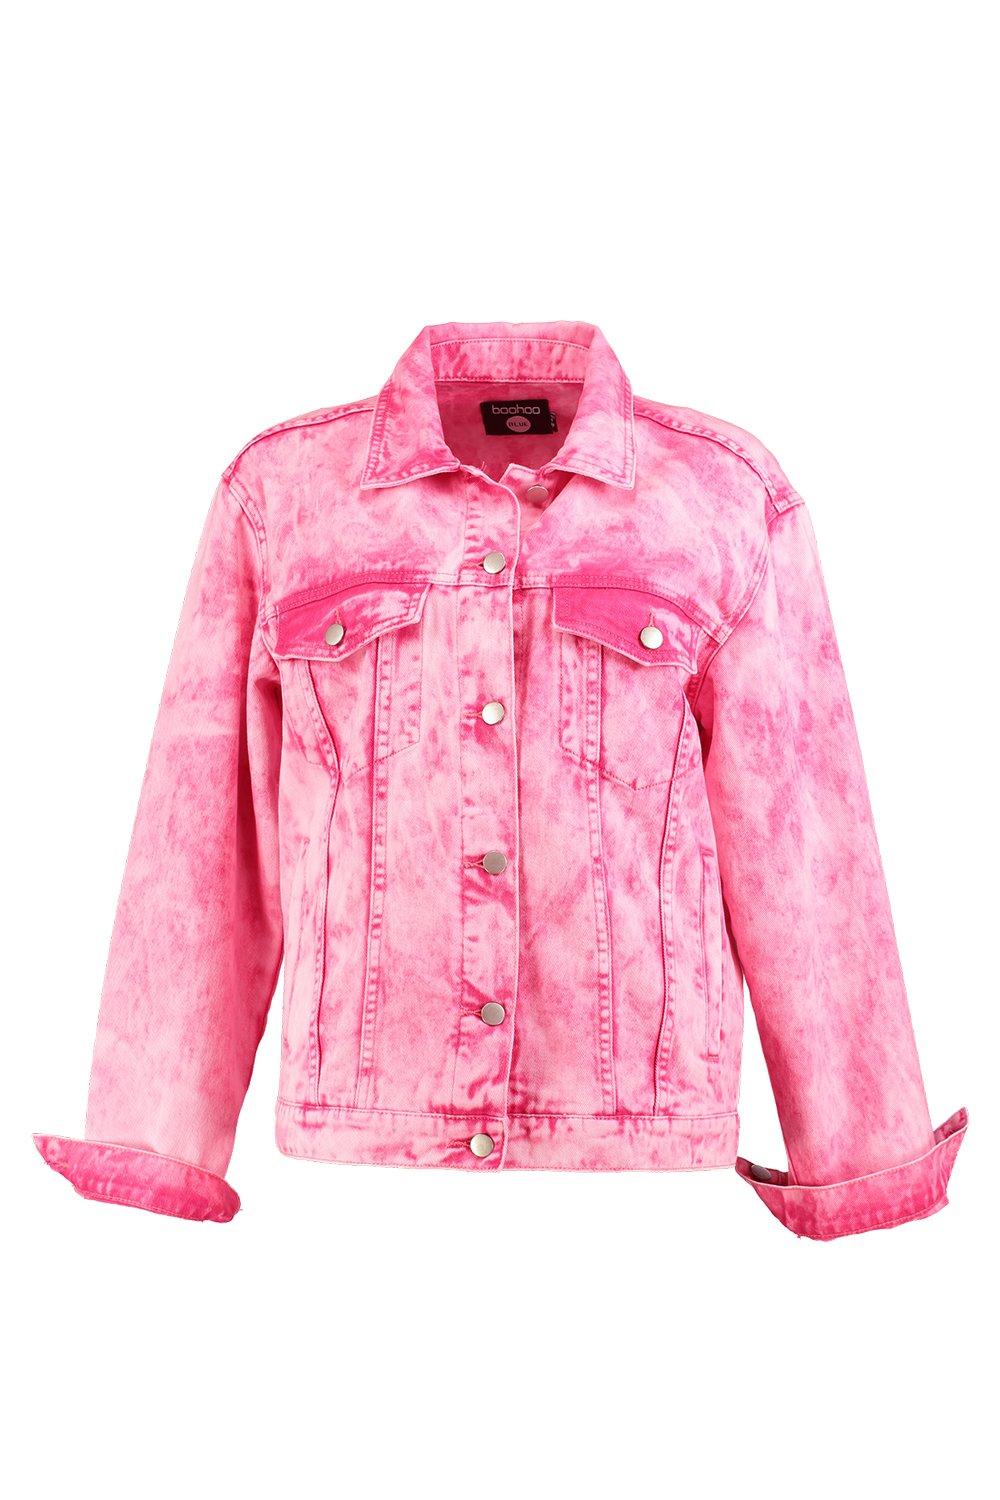 dark pink denim jacket